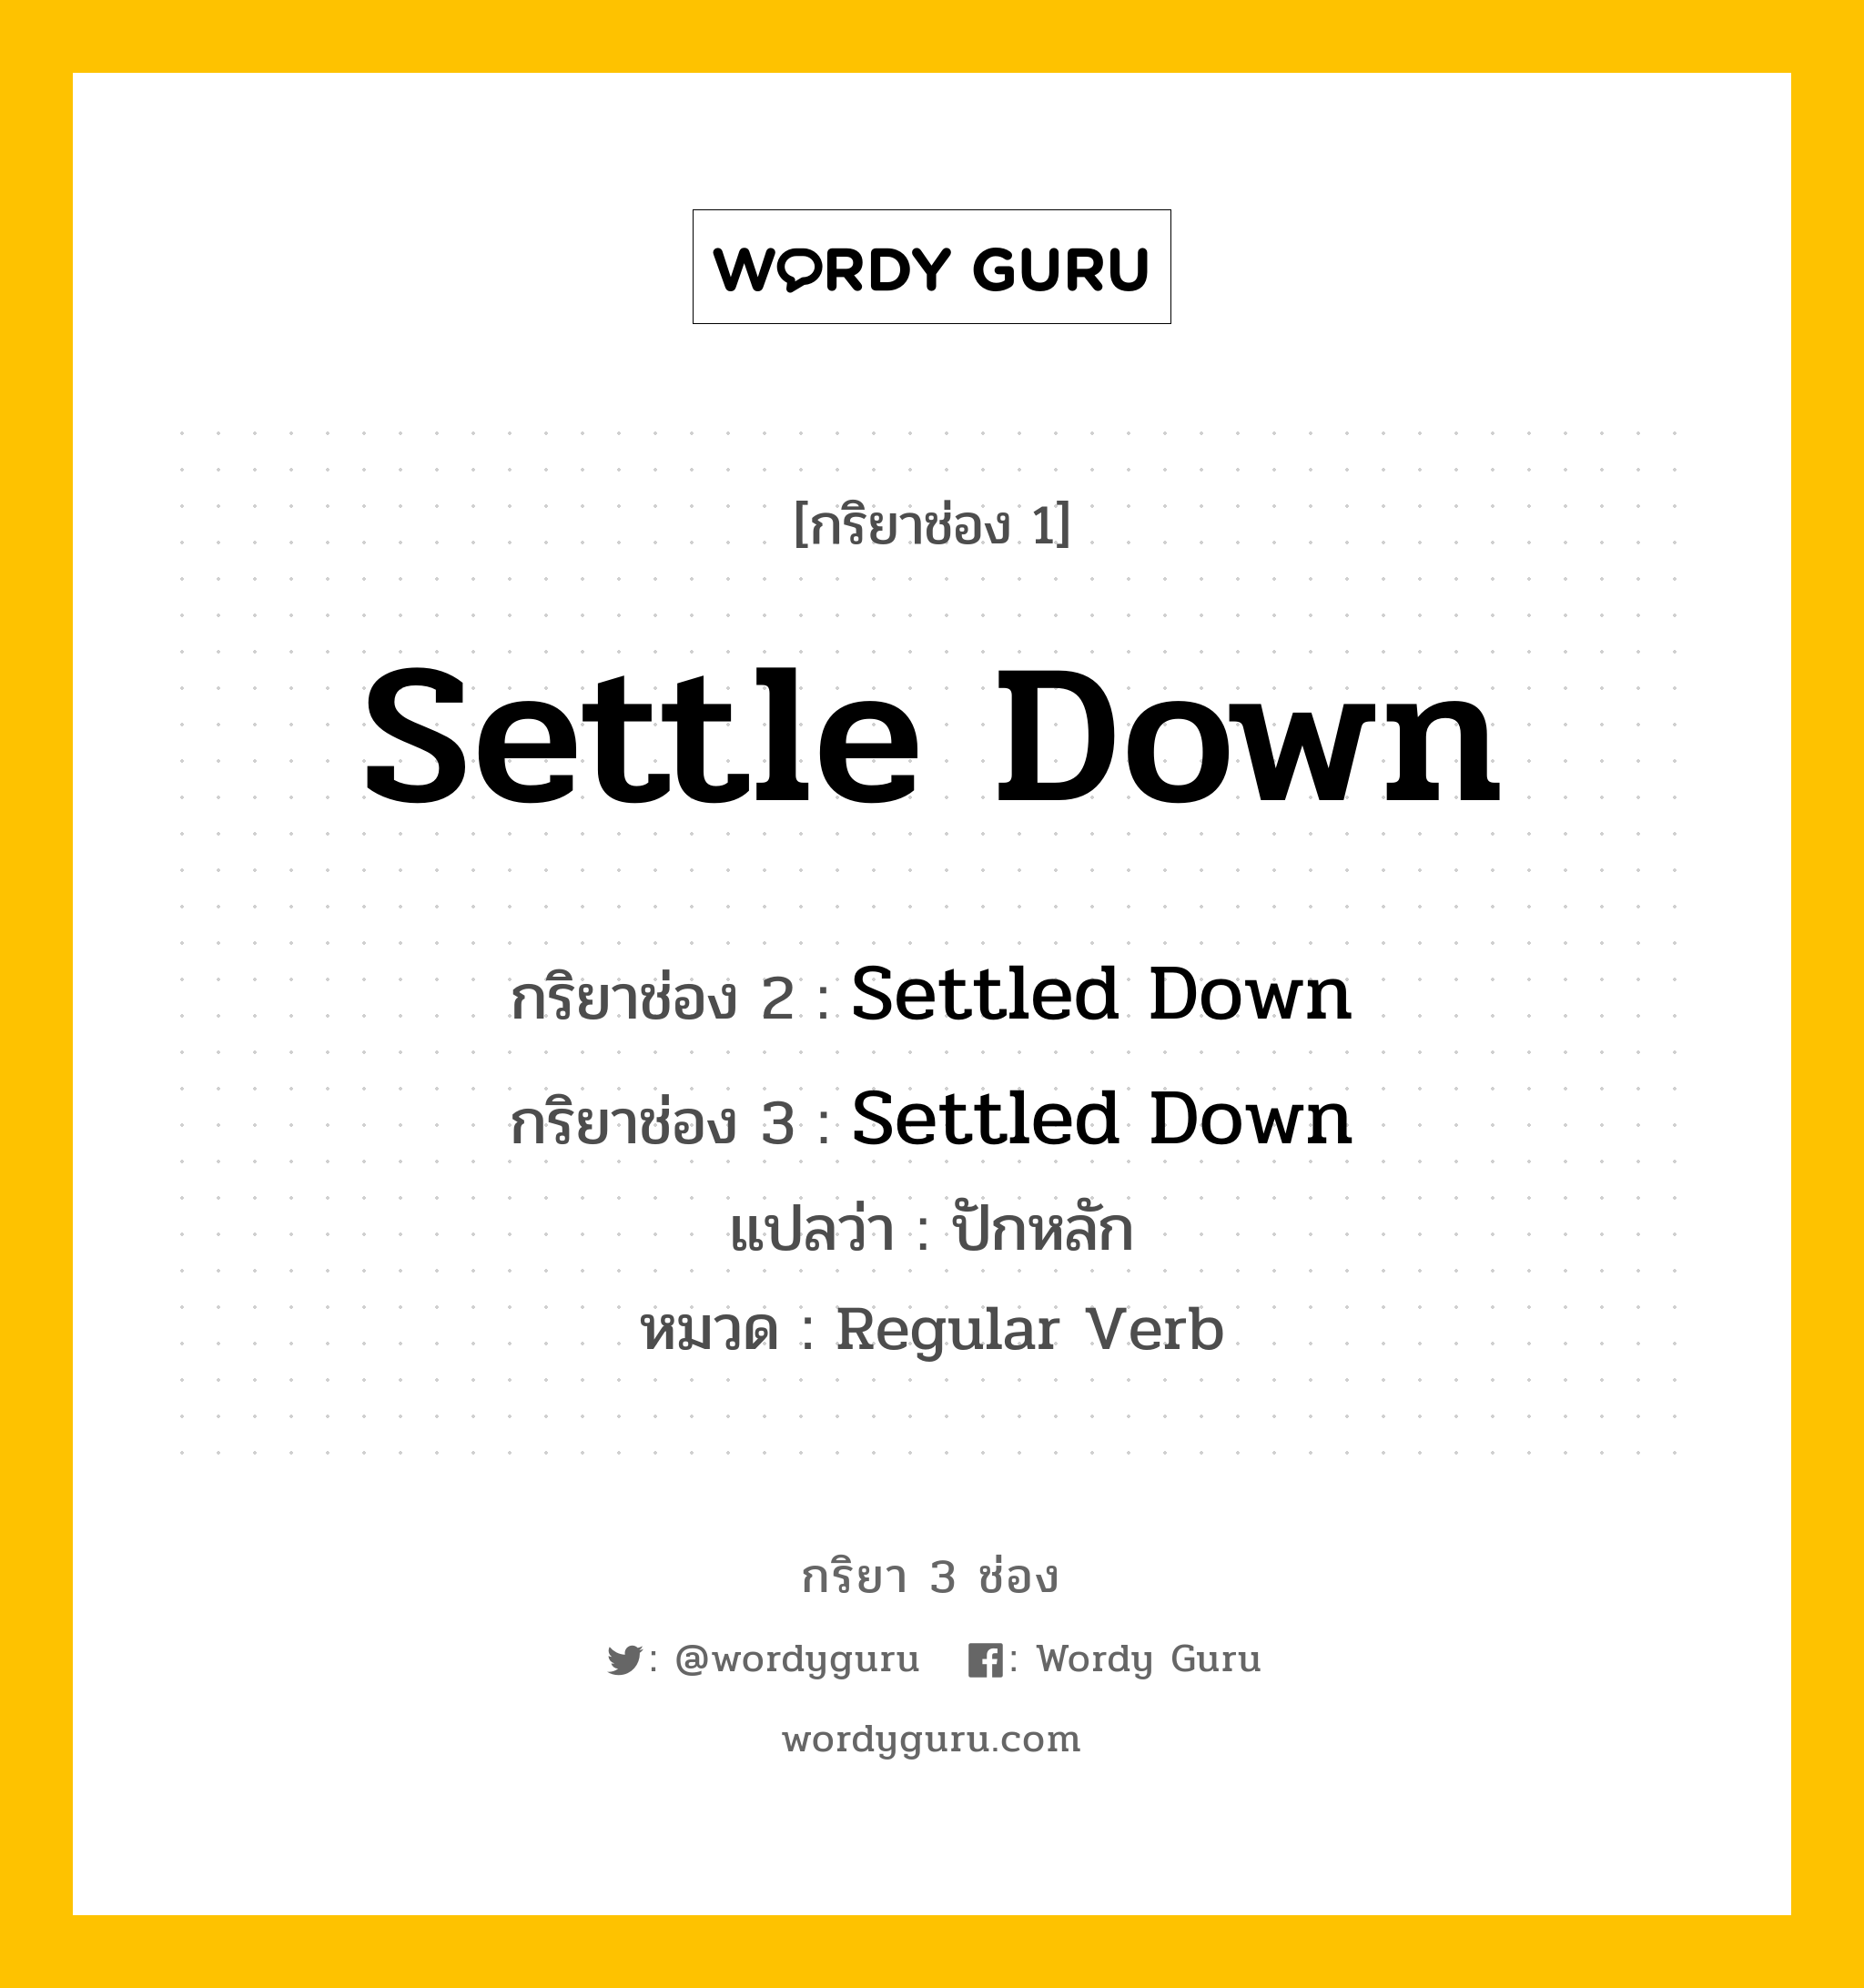 กริยา 3 ช่อง ของ Settle Down คืออะไร? มาดูคำอ่าน คำแปลกันเลย, กริยาช่อง 1 Settle Down กริยาช่อง 2 Settled Down กริยาช่อง 3 Settled Down แปลว่า ปักหลัก หมวด Regular Verb หมวด Regular Verb